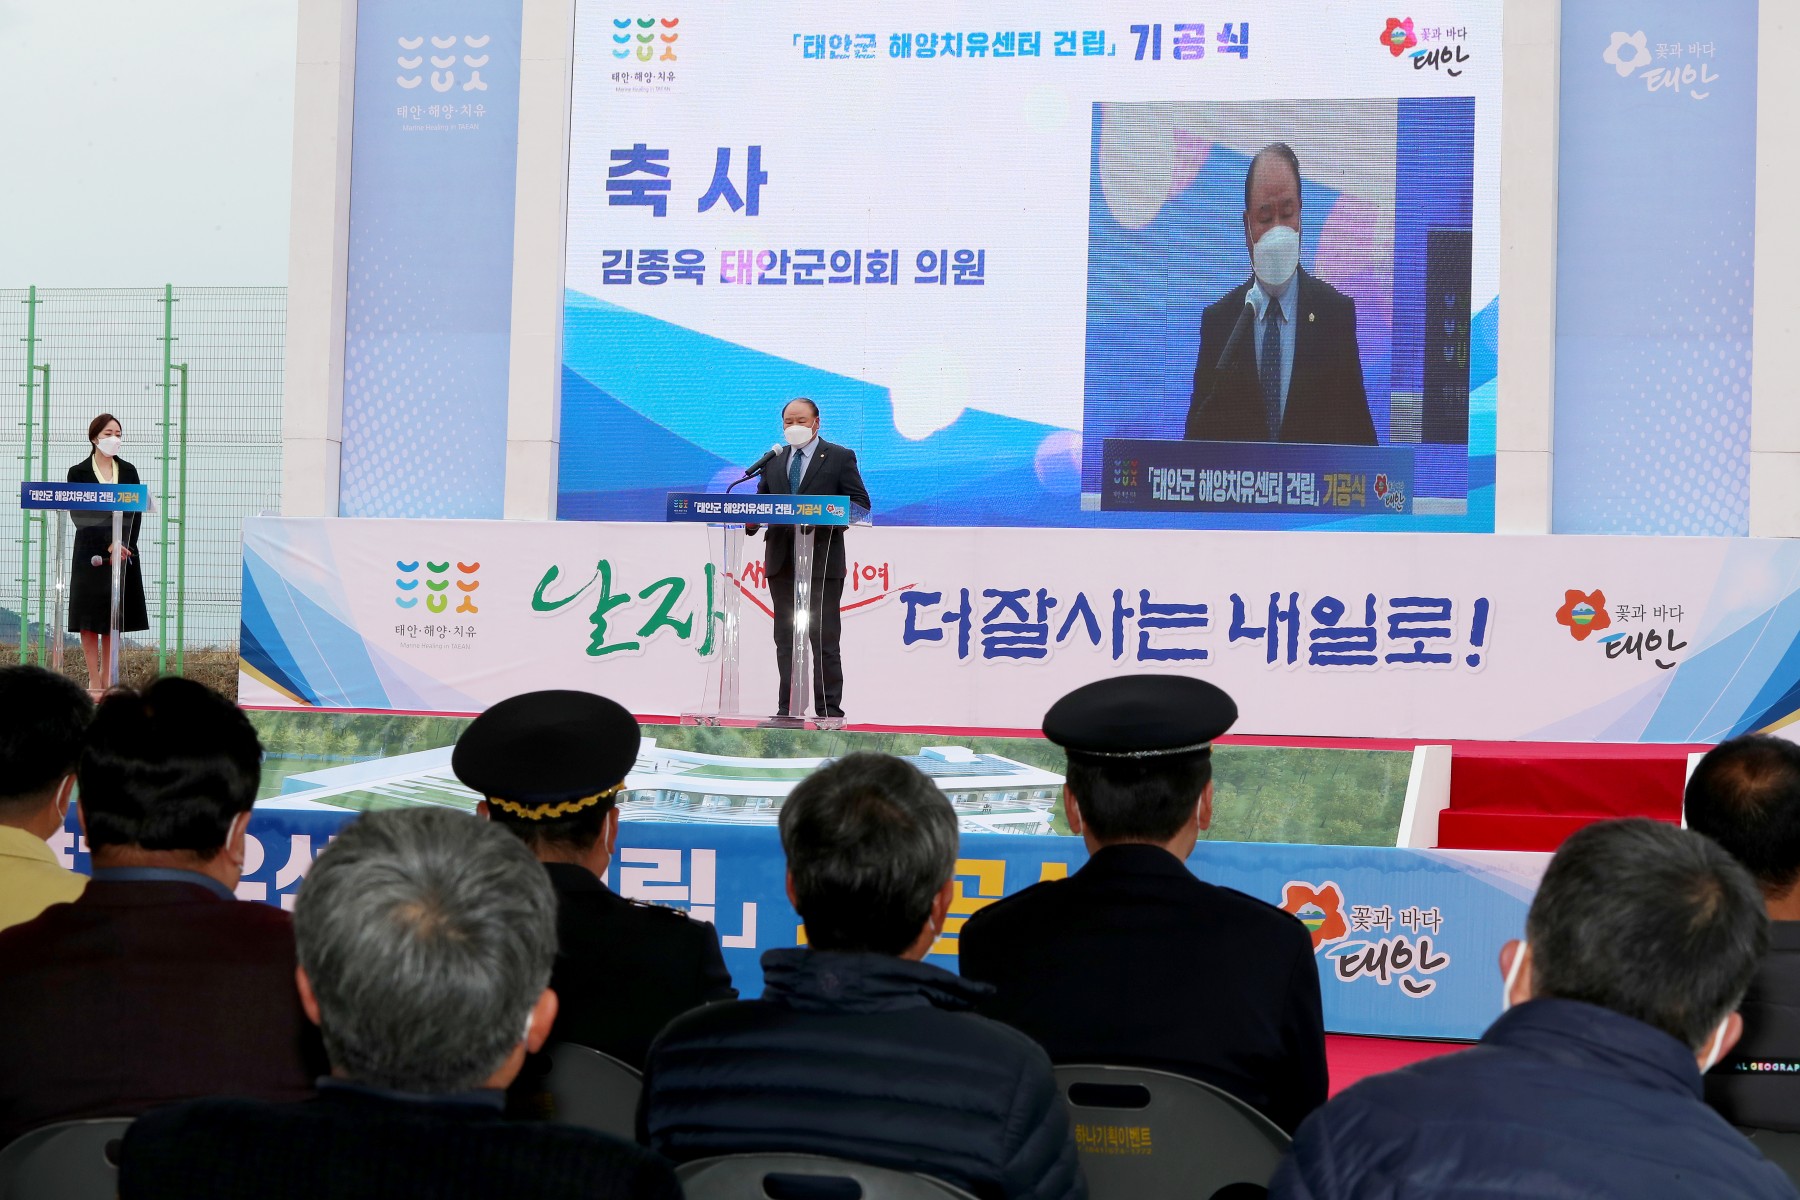 태안군 해양치유센터 건립 기공식 참석(3. 18.)